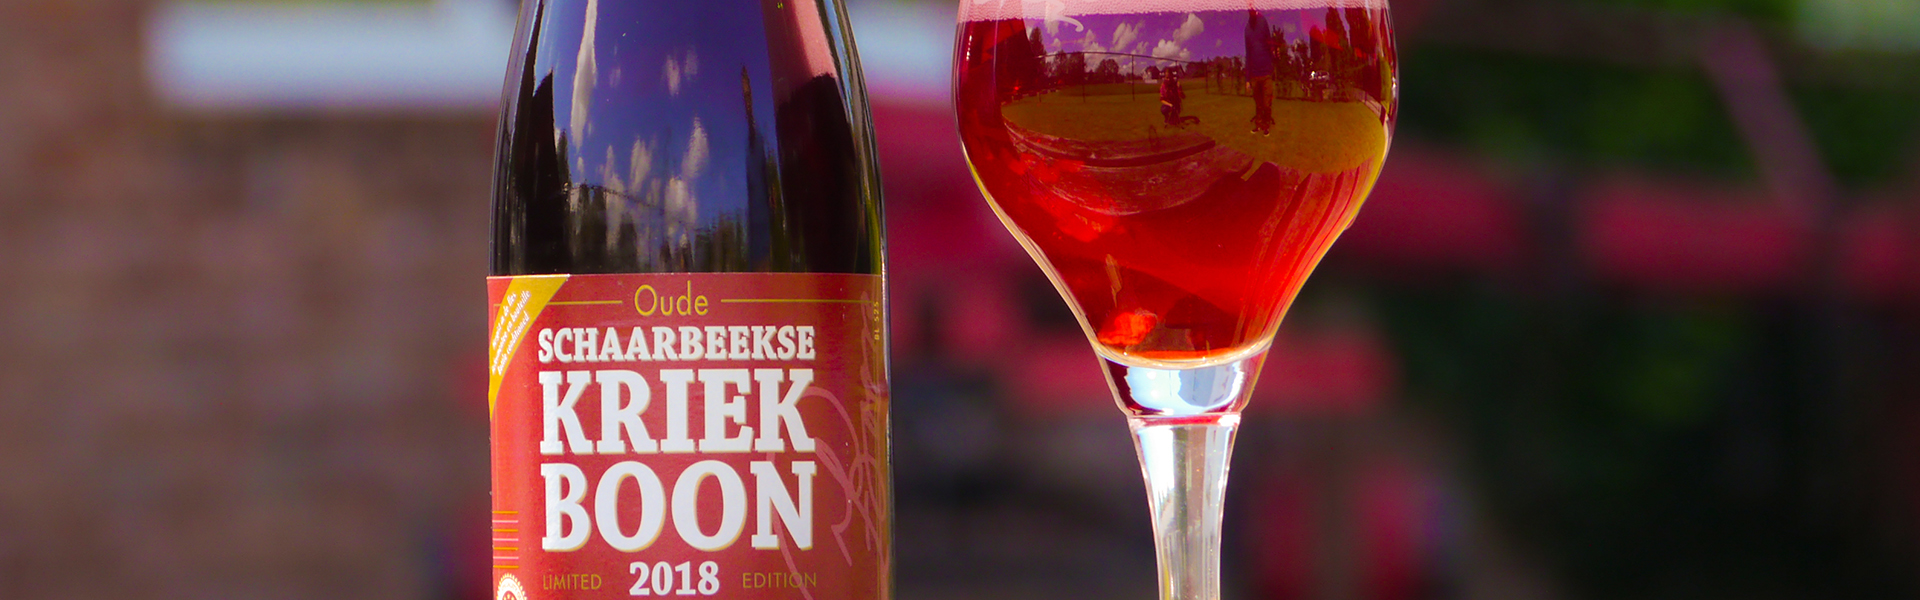 Lambicmästaren Frank Boon släpper unik sponjäst öl smaksatt med lokala “surkörsbär”.